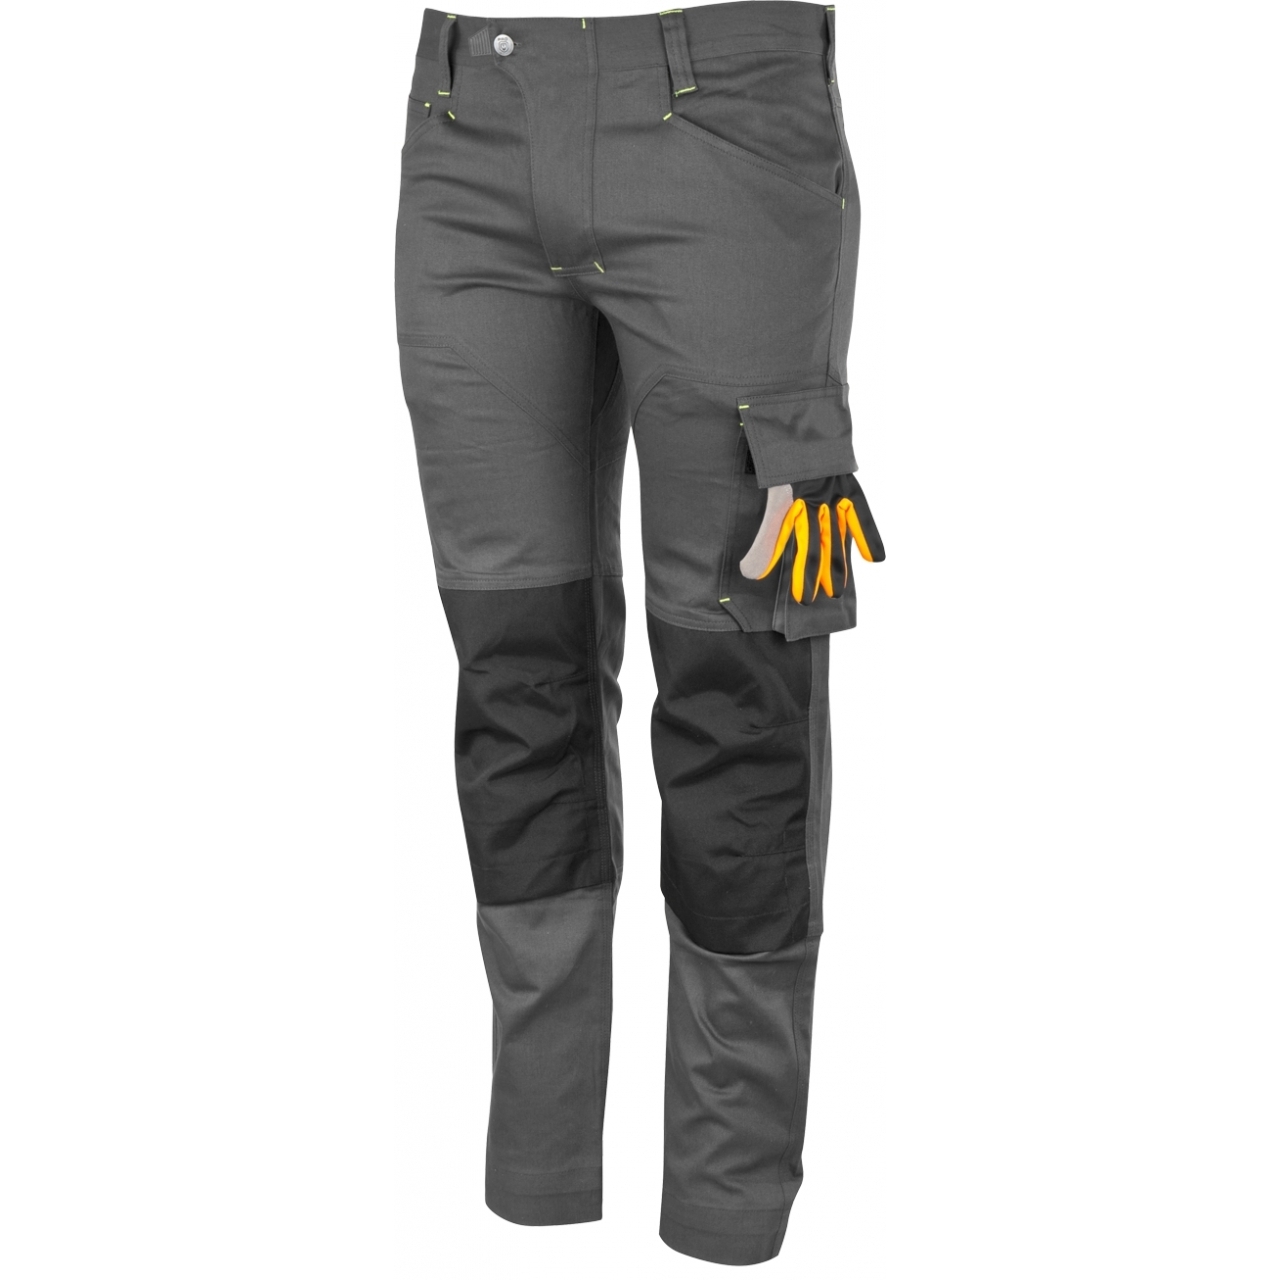 Kalhoty pracovní Bennon Erebos Light - šedé, 56